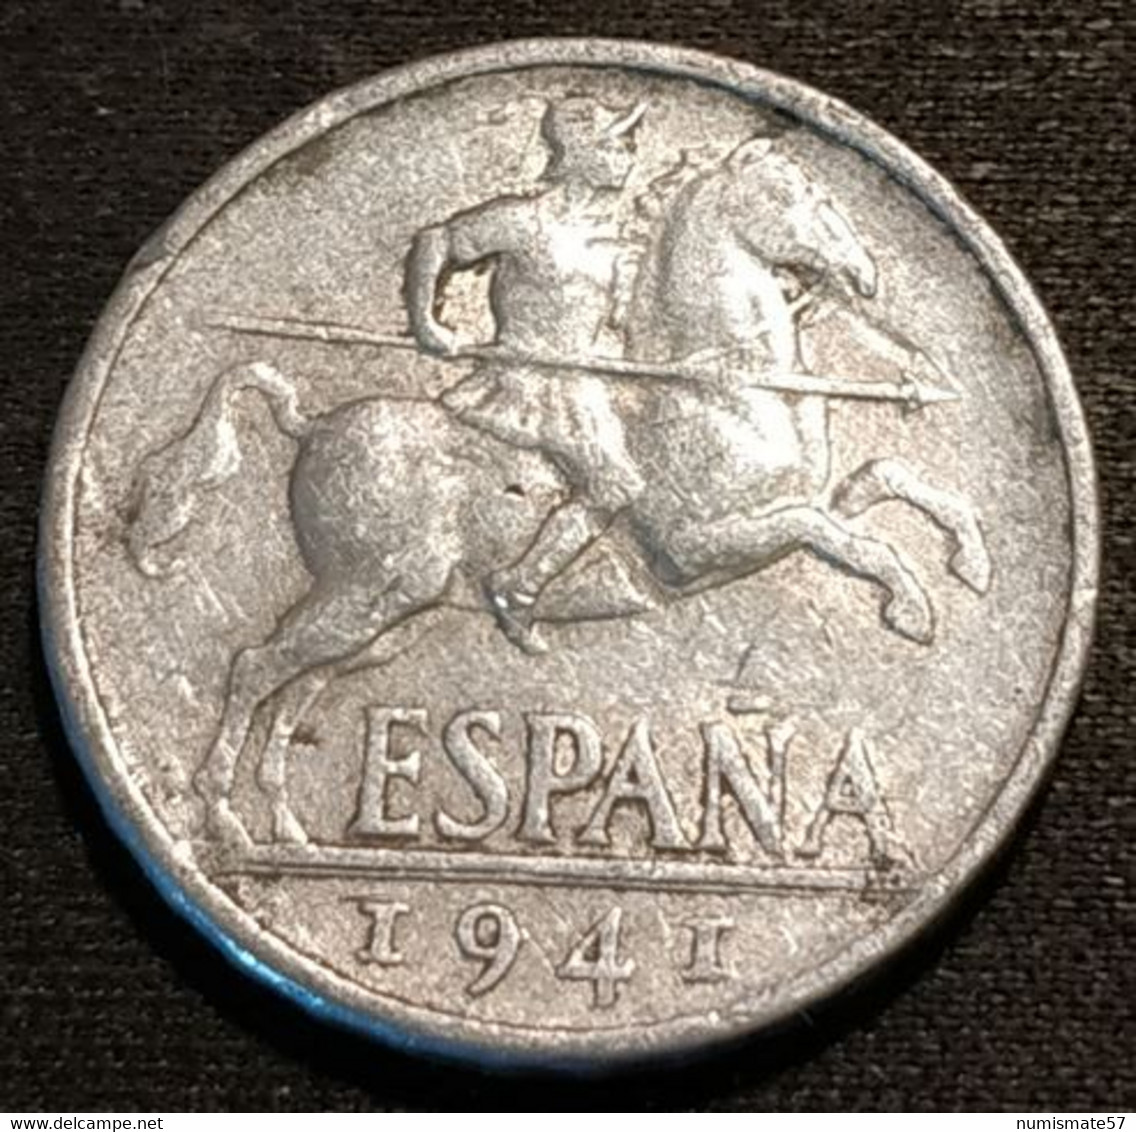 ESPAGNE - ESPANA - SPAIN - 10 CENTIMOS 1941 - Cavalier Ibérique - KM 766 - 10 Céntimos